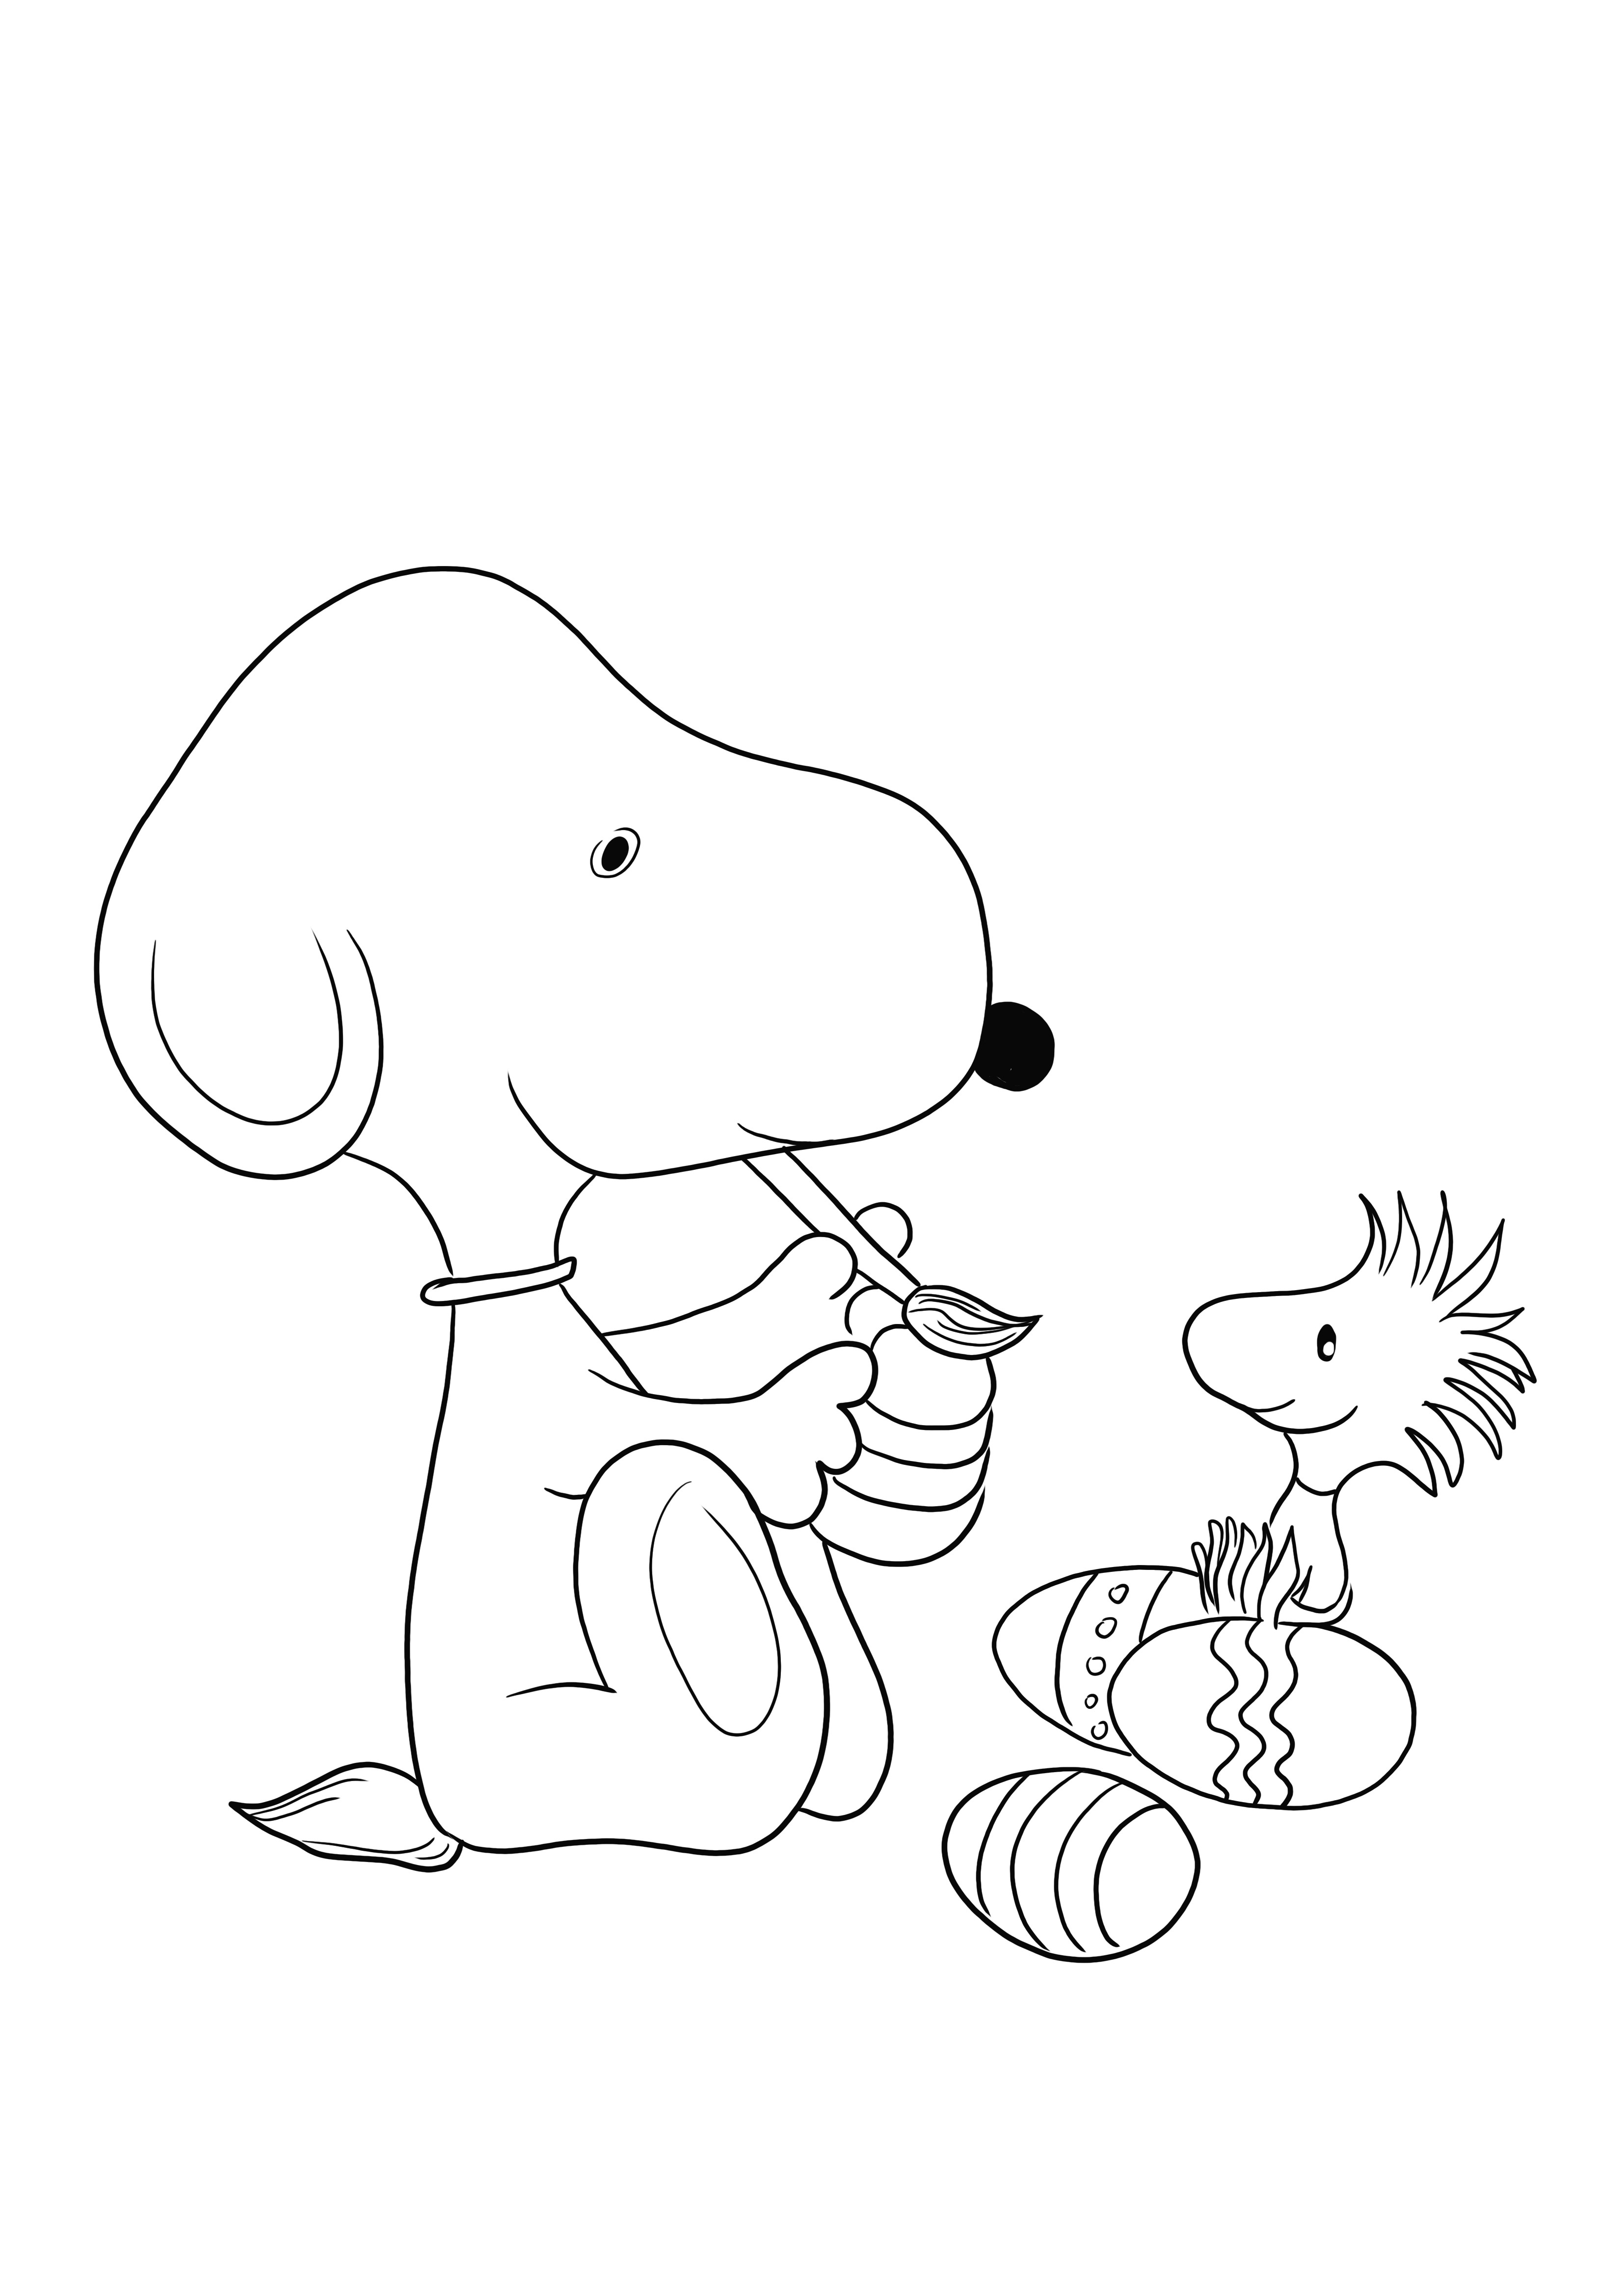 Snoopy do desenho animado Peanuts pintando um ovo de Páscoa grátis para baixar e colorir